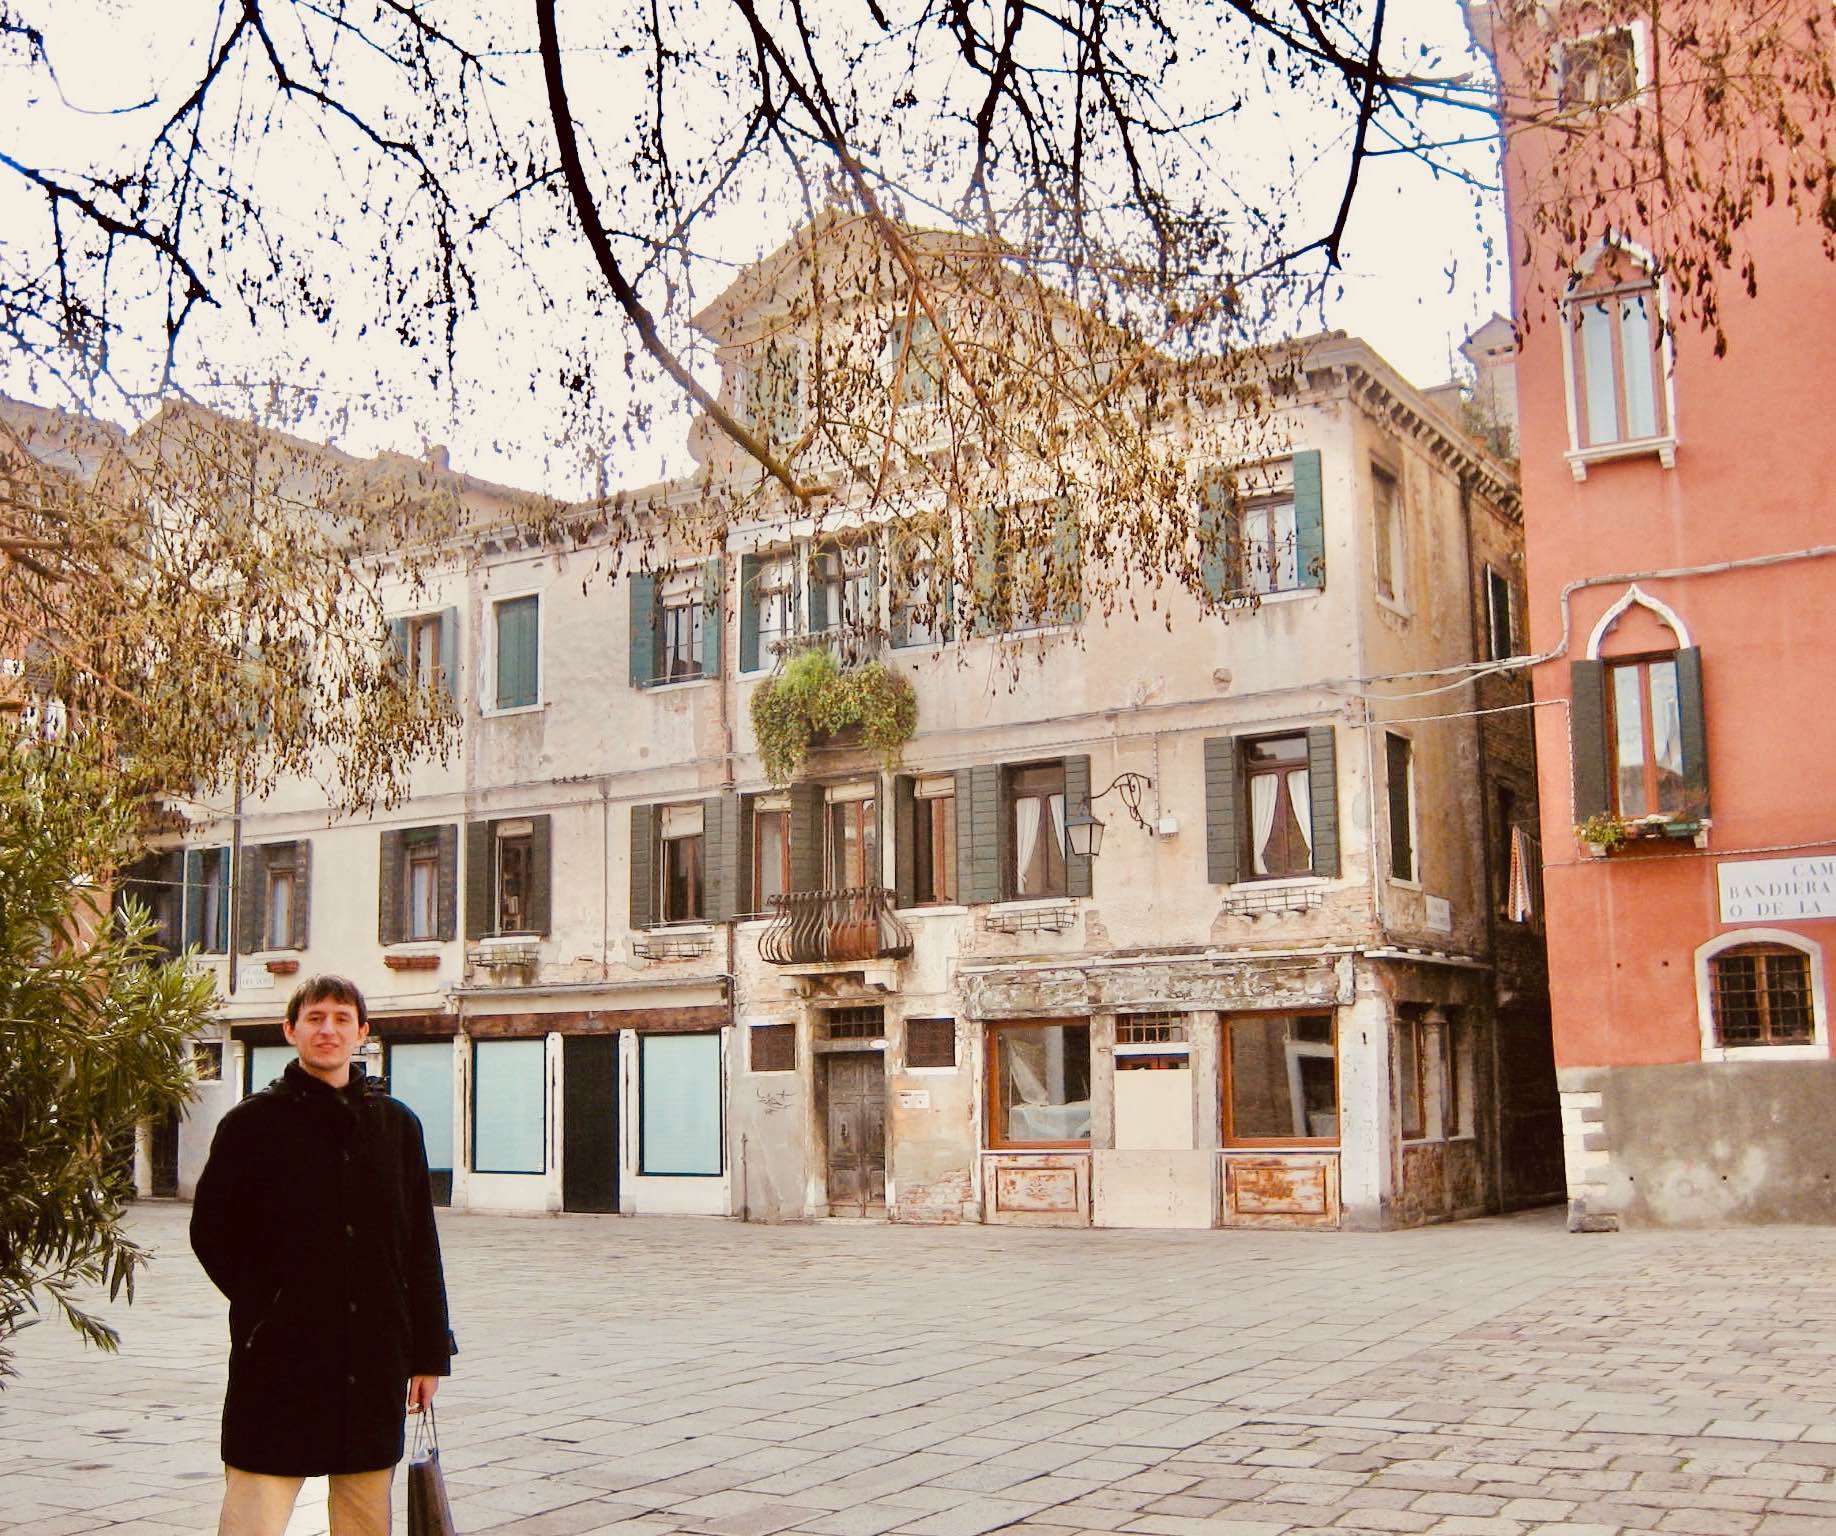 Visit Italy Campo Bandiera e Moro Square in Venice